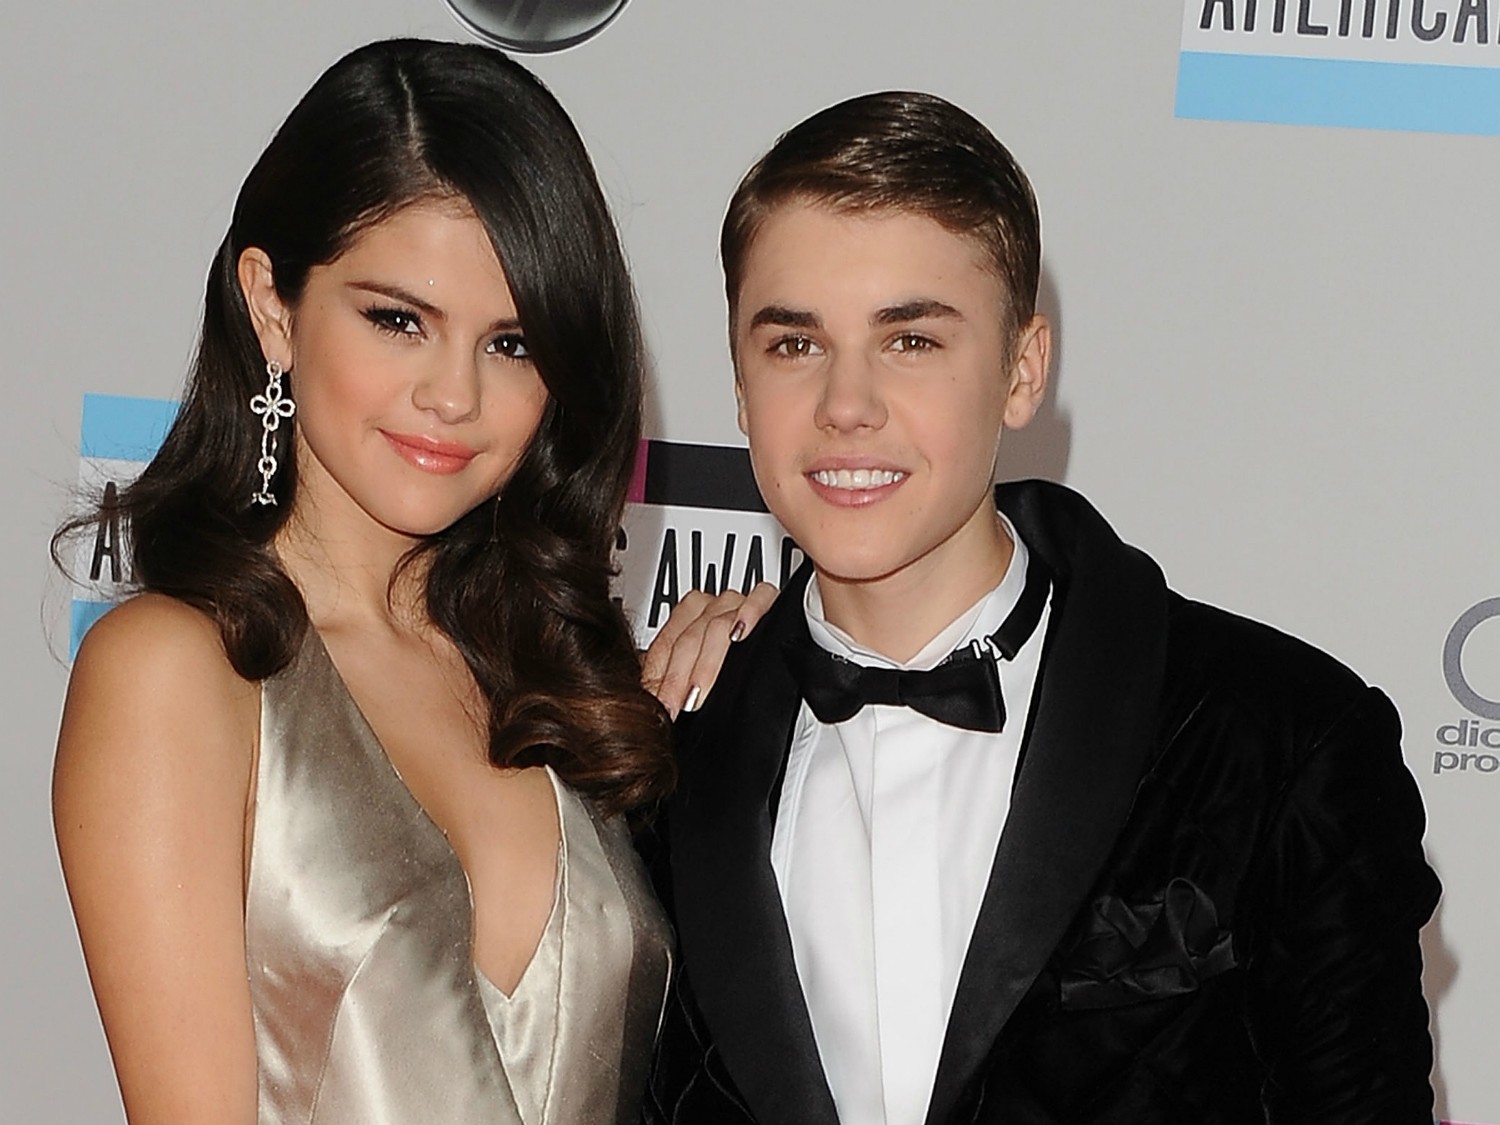 Selena Gomez e Justin Bieber vão e voltam, vão e voltam... As acusações de que o astro canadense traía/trai a cantora não a impedem (por muito tempo) de tentar voltar aos braços dele, que por sua vez também dá esporádicas declarações públicas de afeto. (Foto: Getty Images)